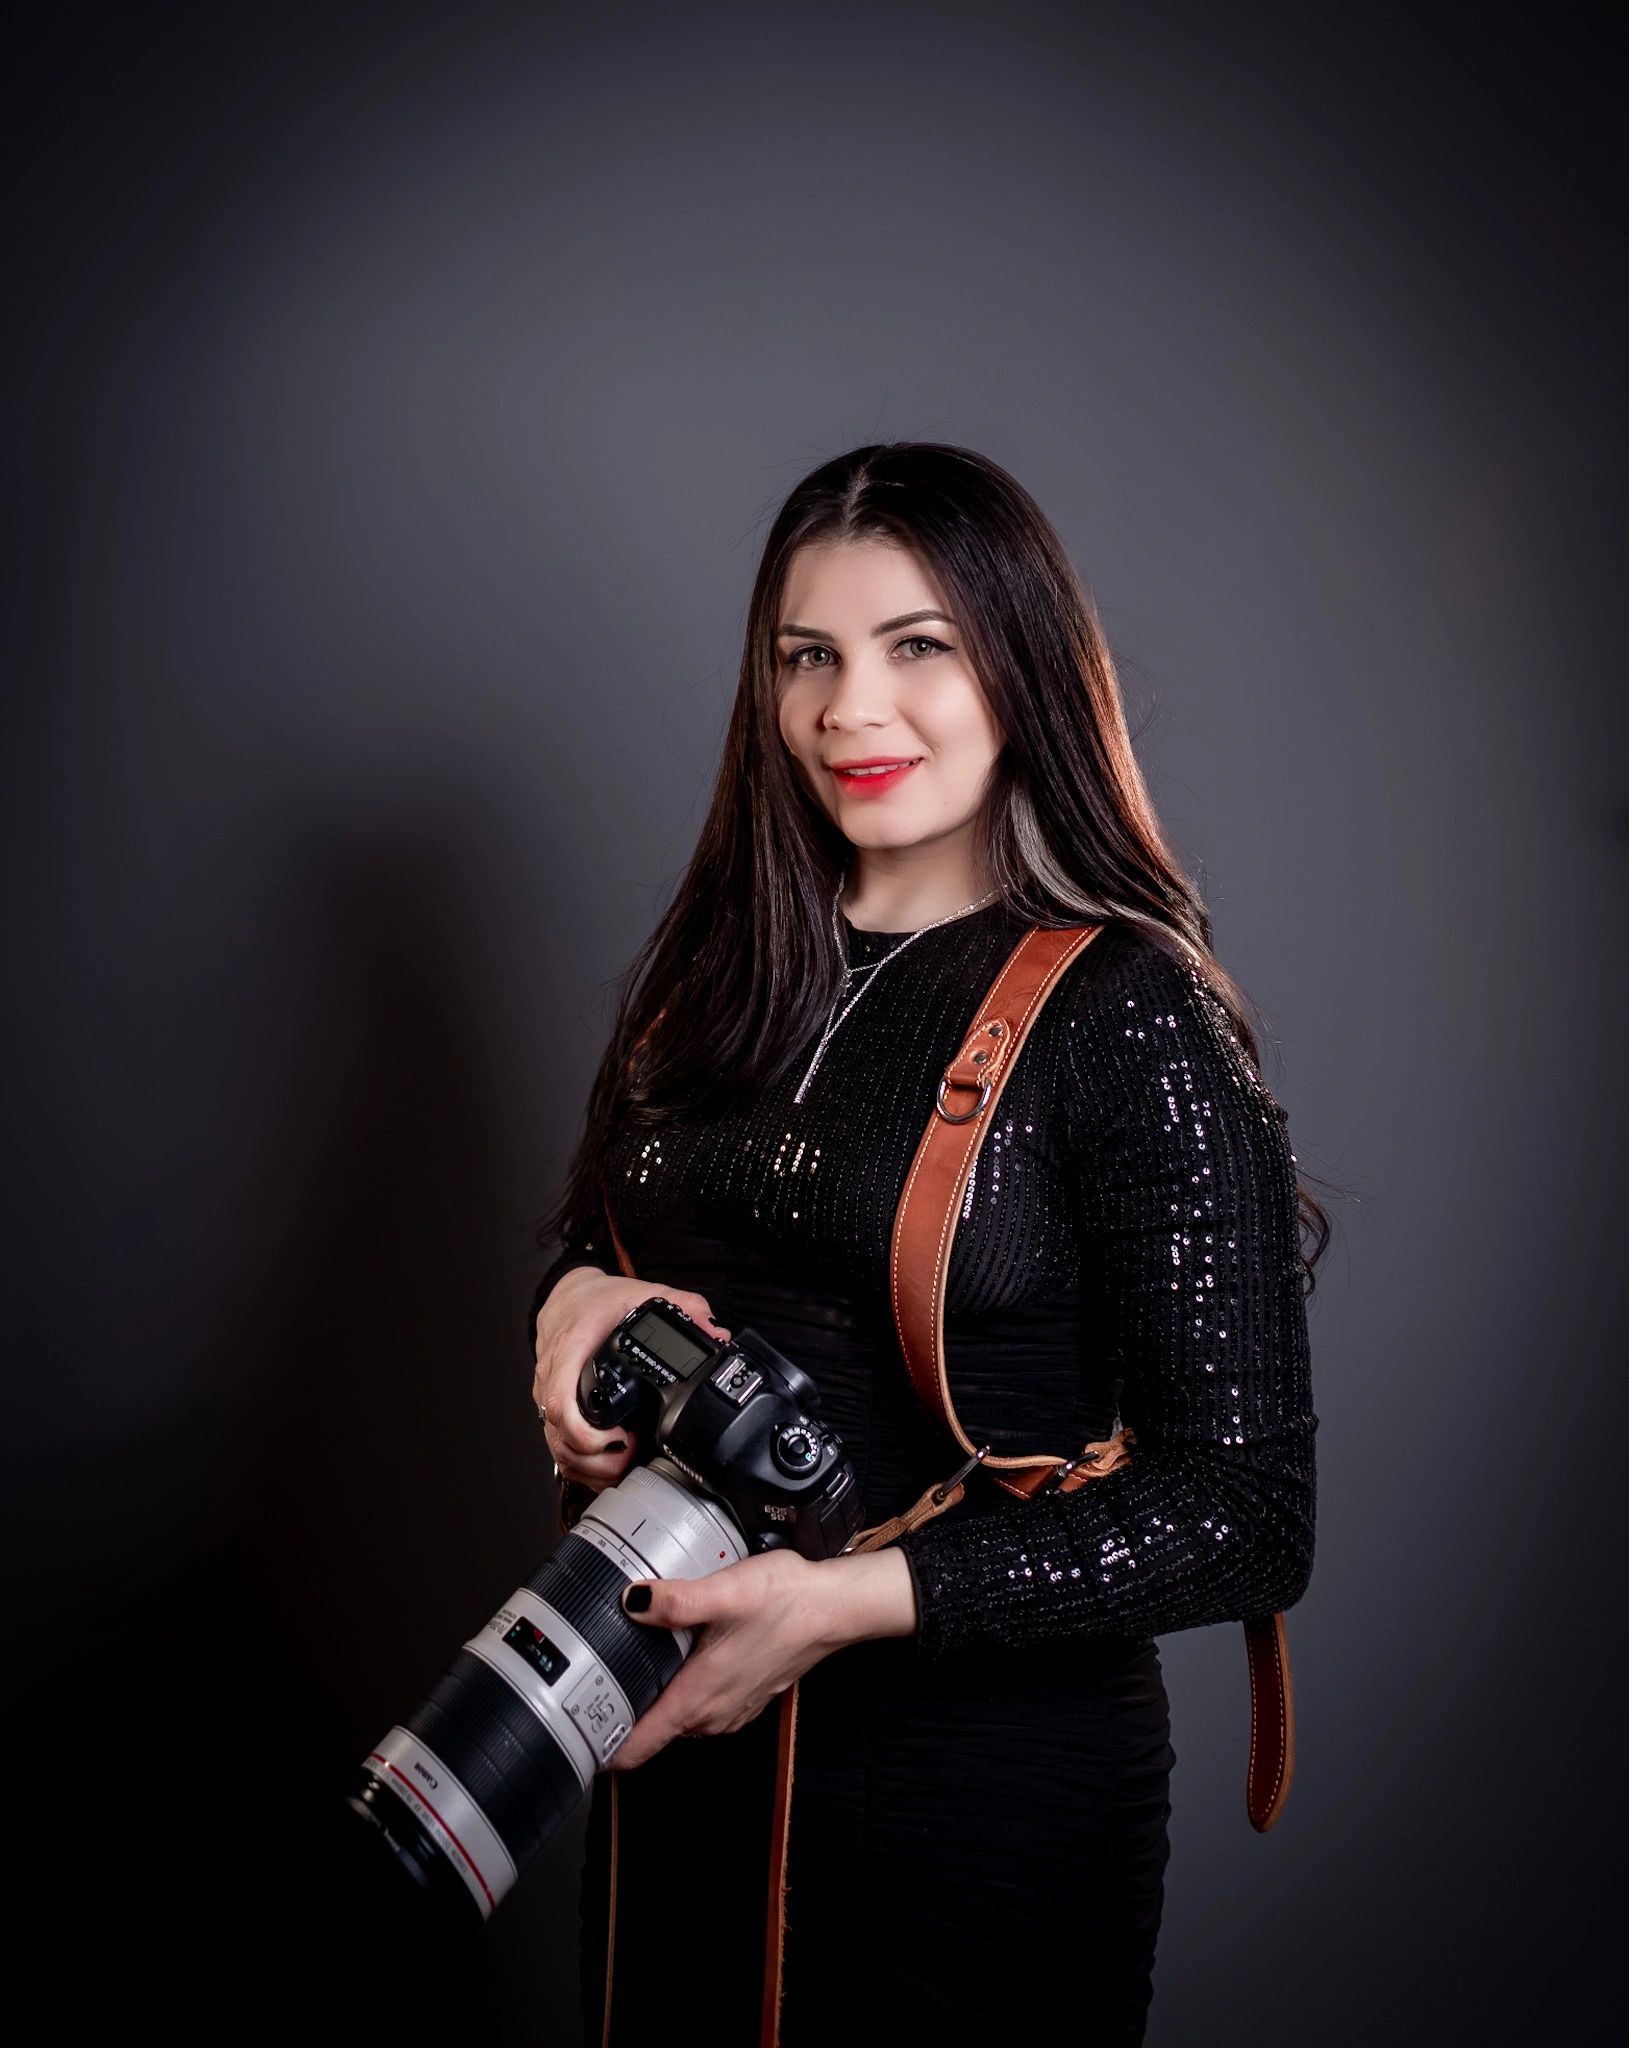 Photographer 